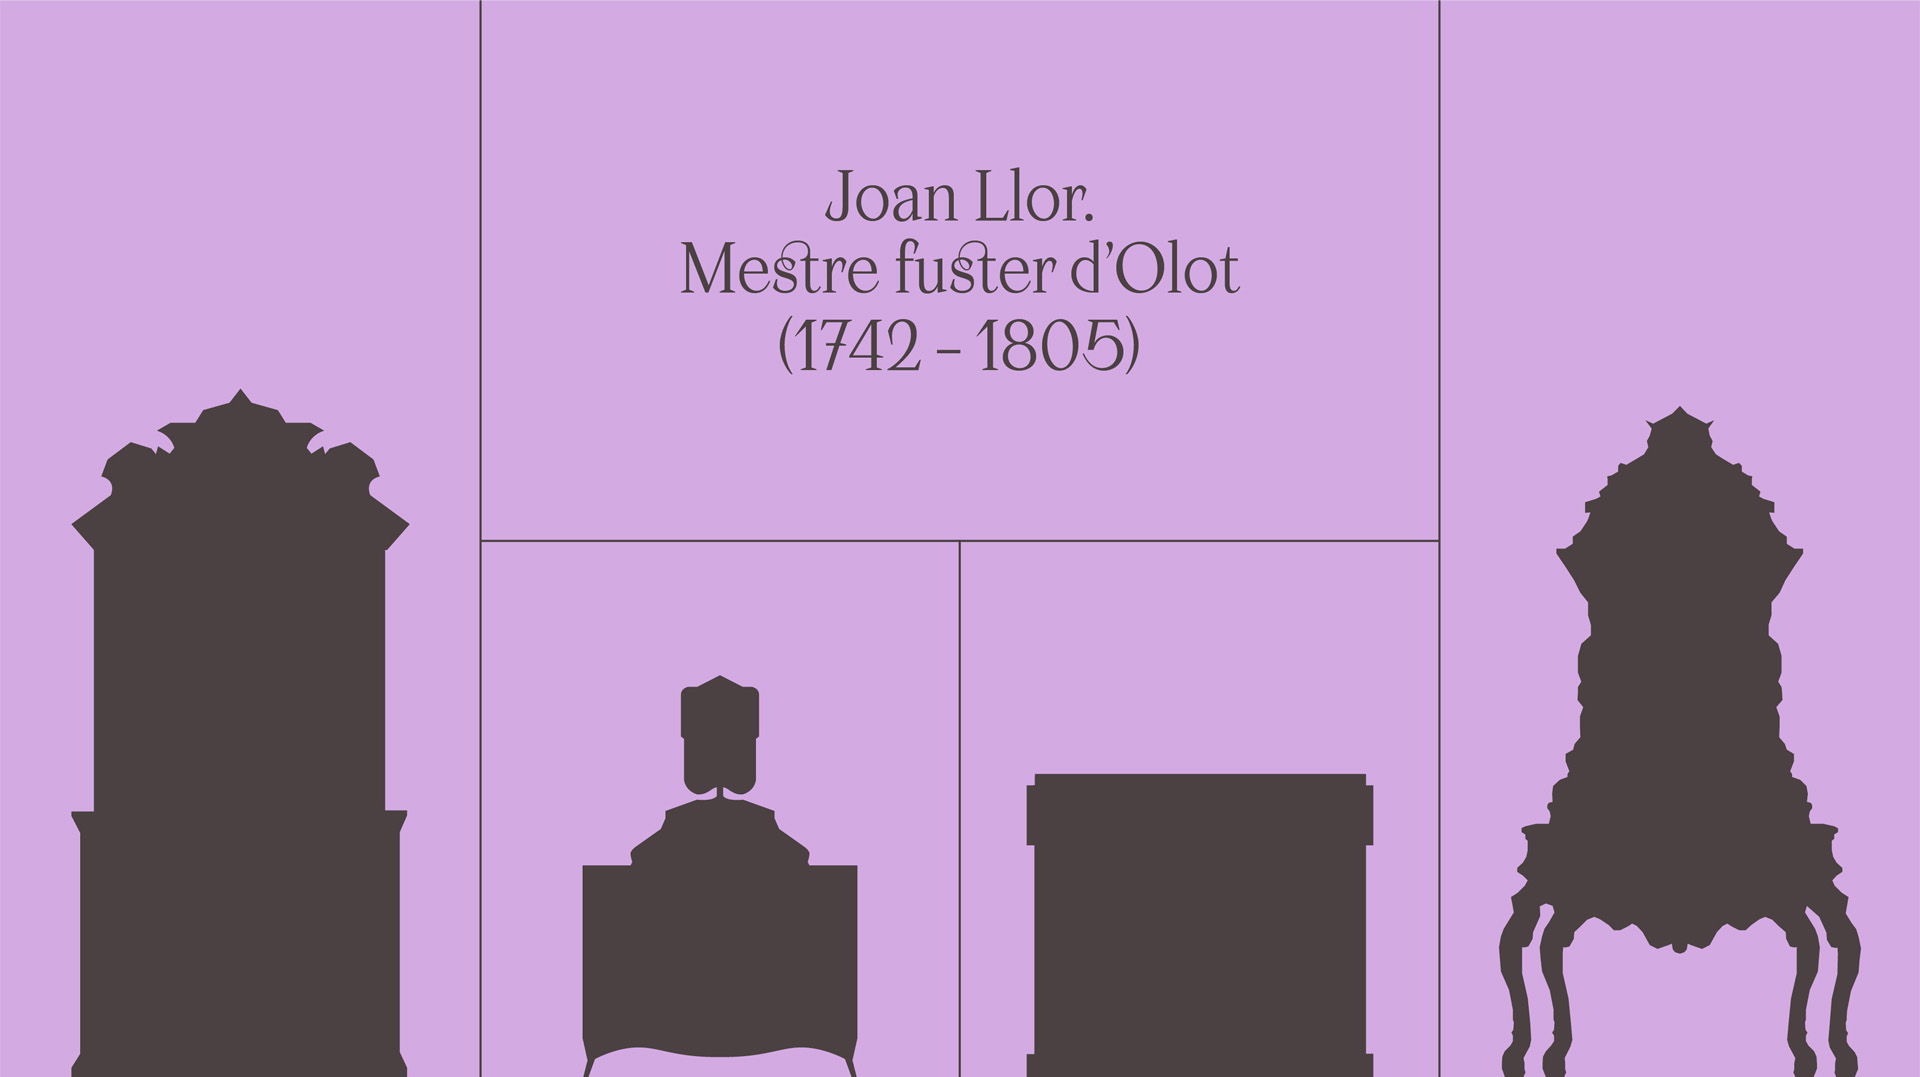 “Joan Llor. Mestre fuster d’Olot (1742-1805)”